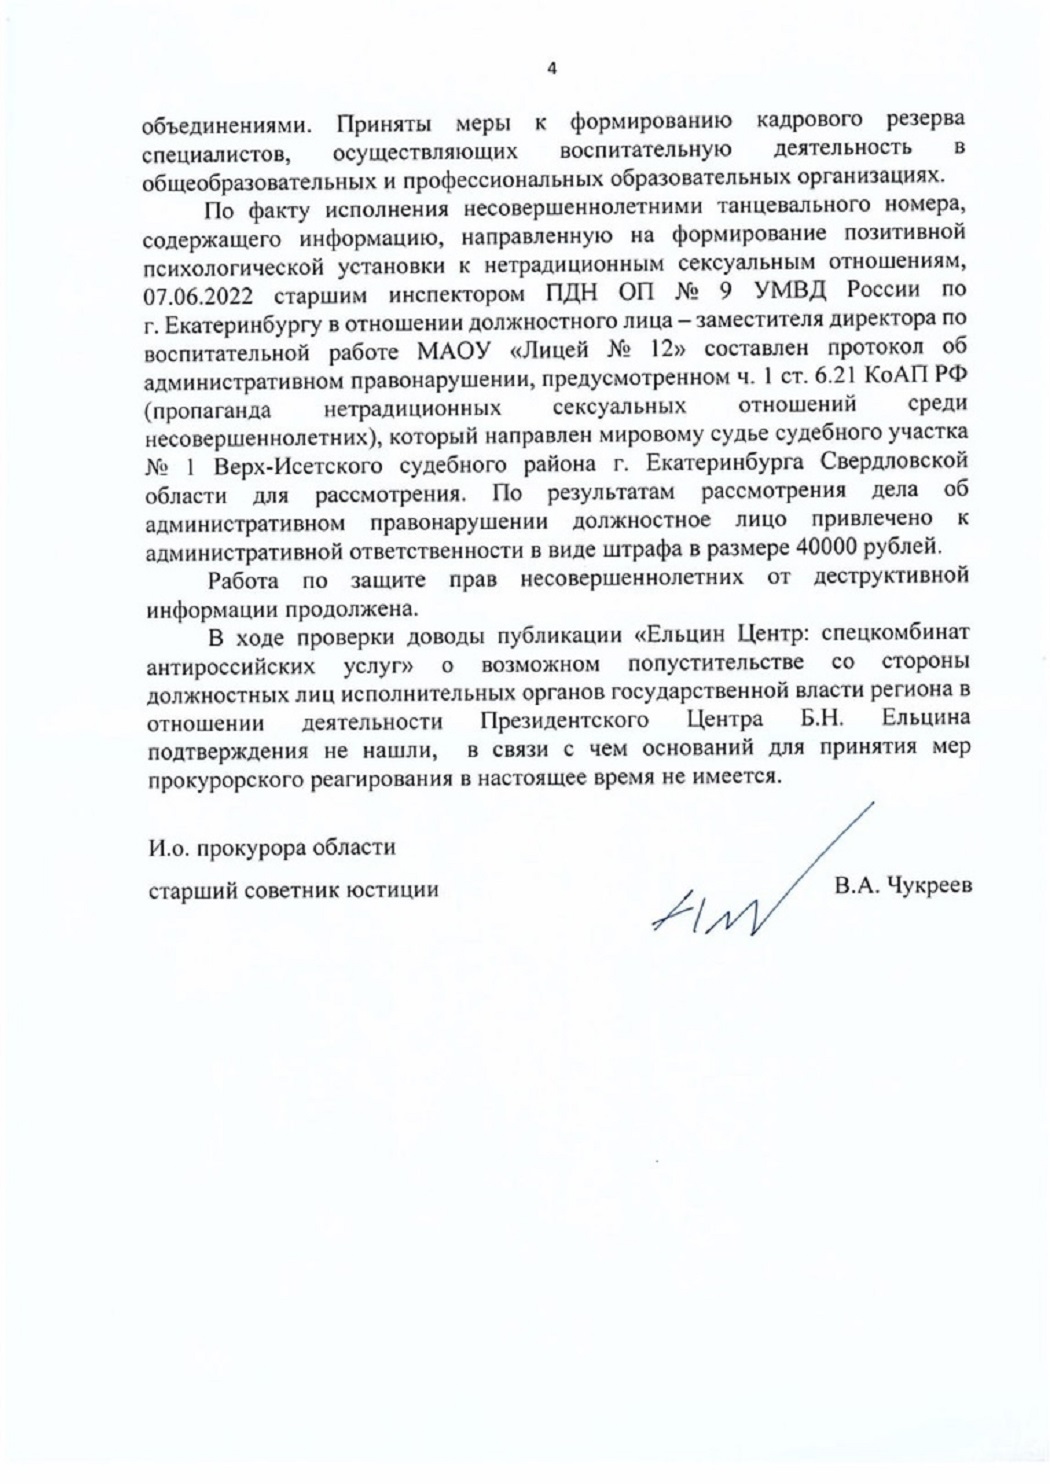 Фото: ответ прокуратуры, размещённый в ТГ-канале Андрея Альшевского